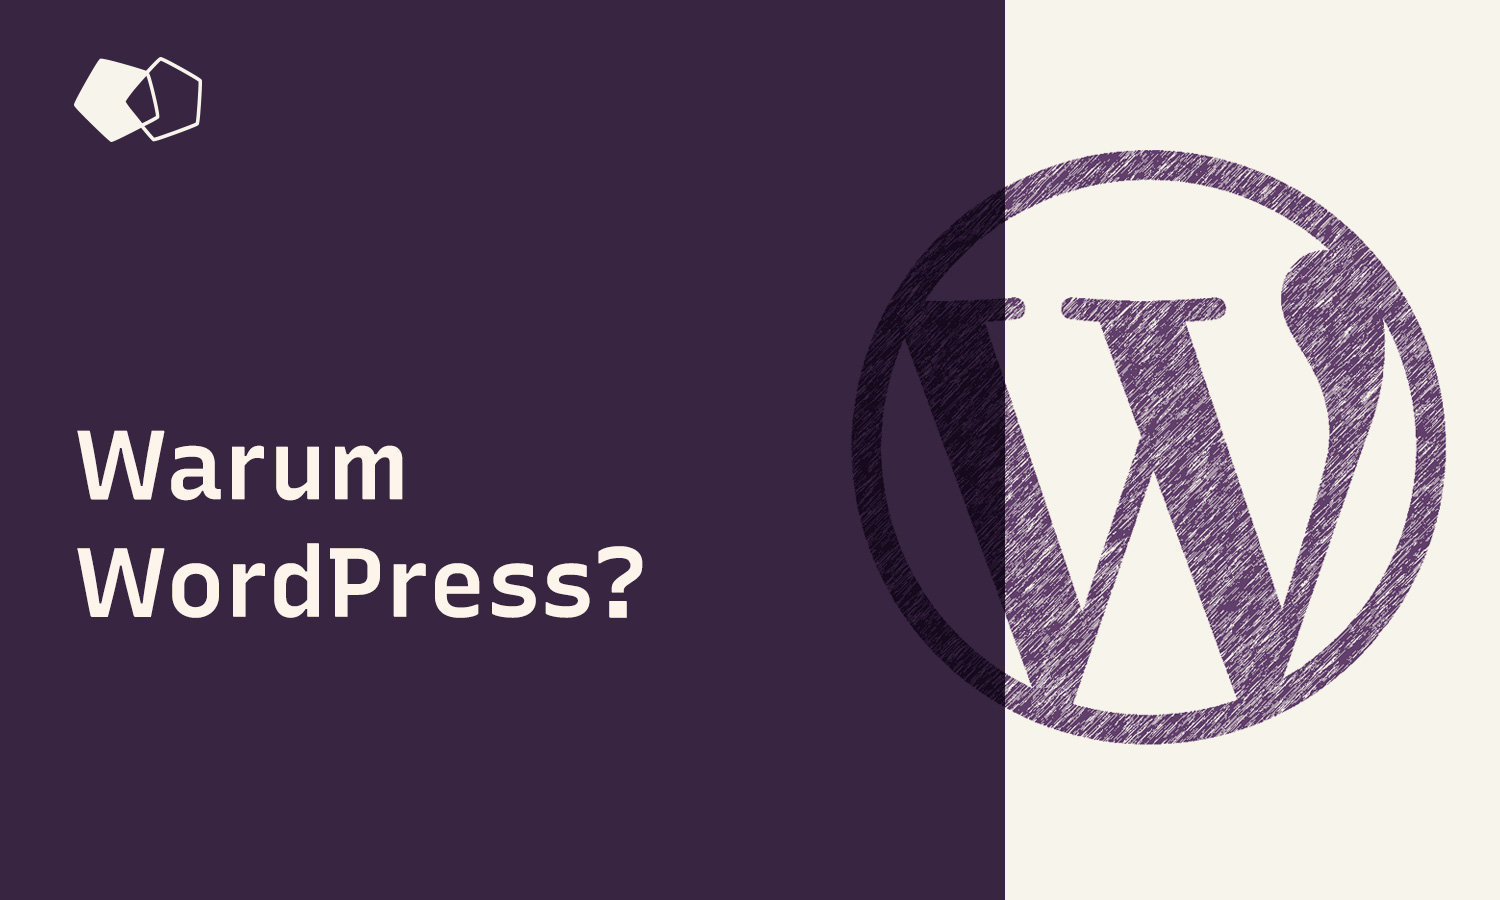 Warum WordPress? Die unschlagbaren Vorteile und unübertroffene Beliebtheit der CMS-Plattform